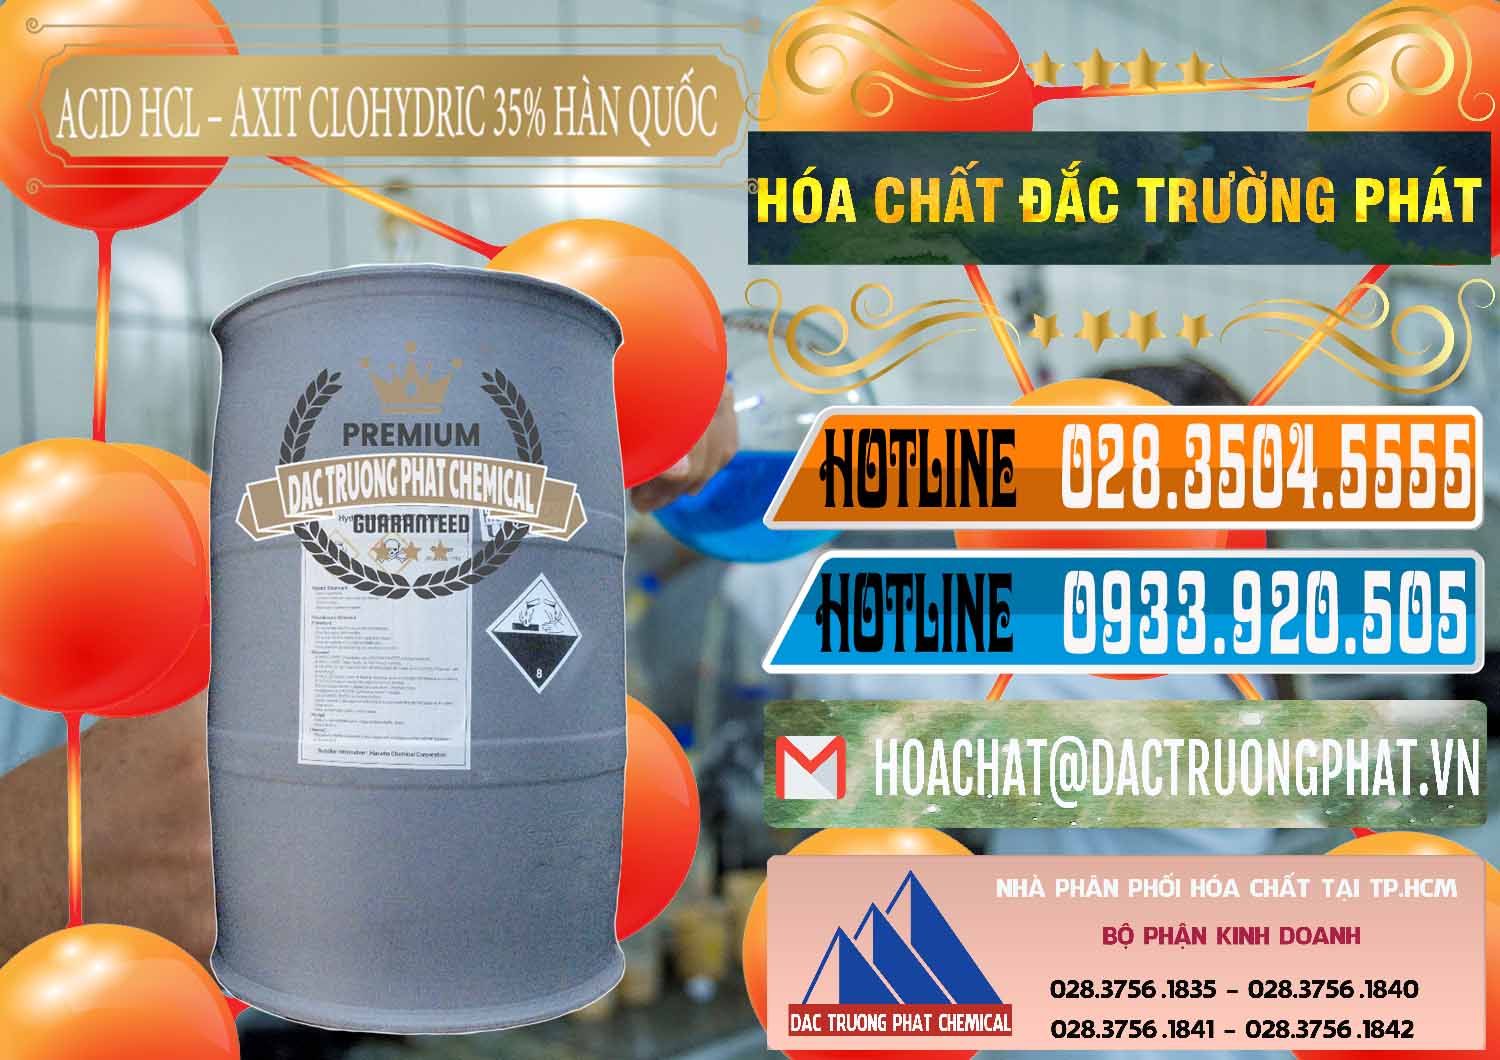 Công ty bán _ cung cấp Acid HCL - Axit Cohidric 35% Hàn Quốc Korea - 0011 - Nhà cung cấp ( nhập khẩu ) hóa chất tại TP.HCM - stmp.net